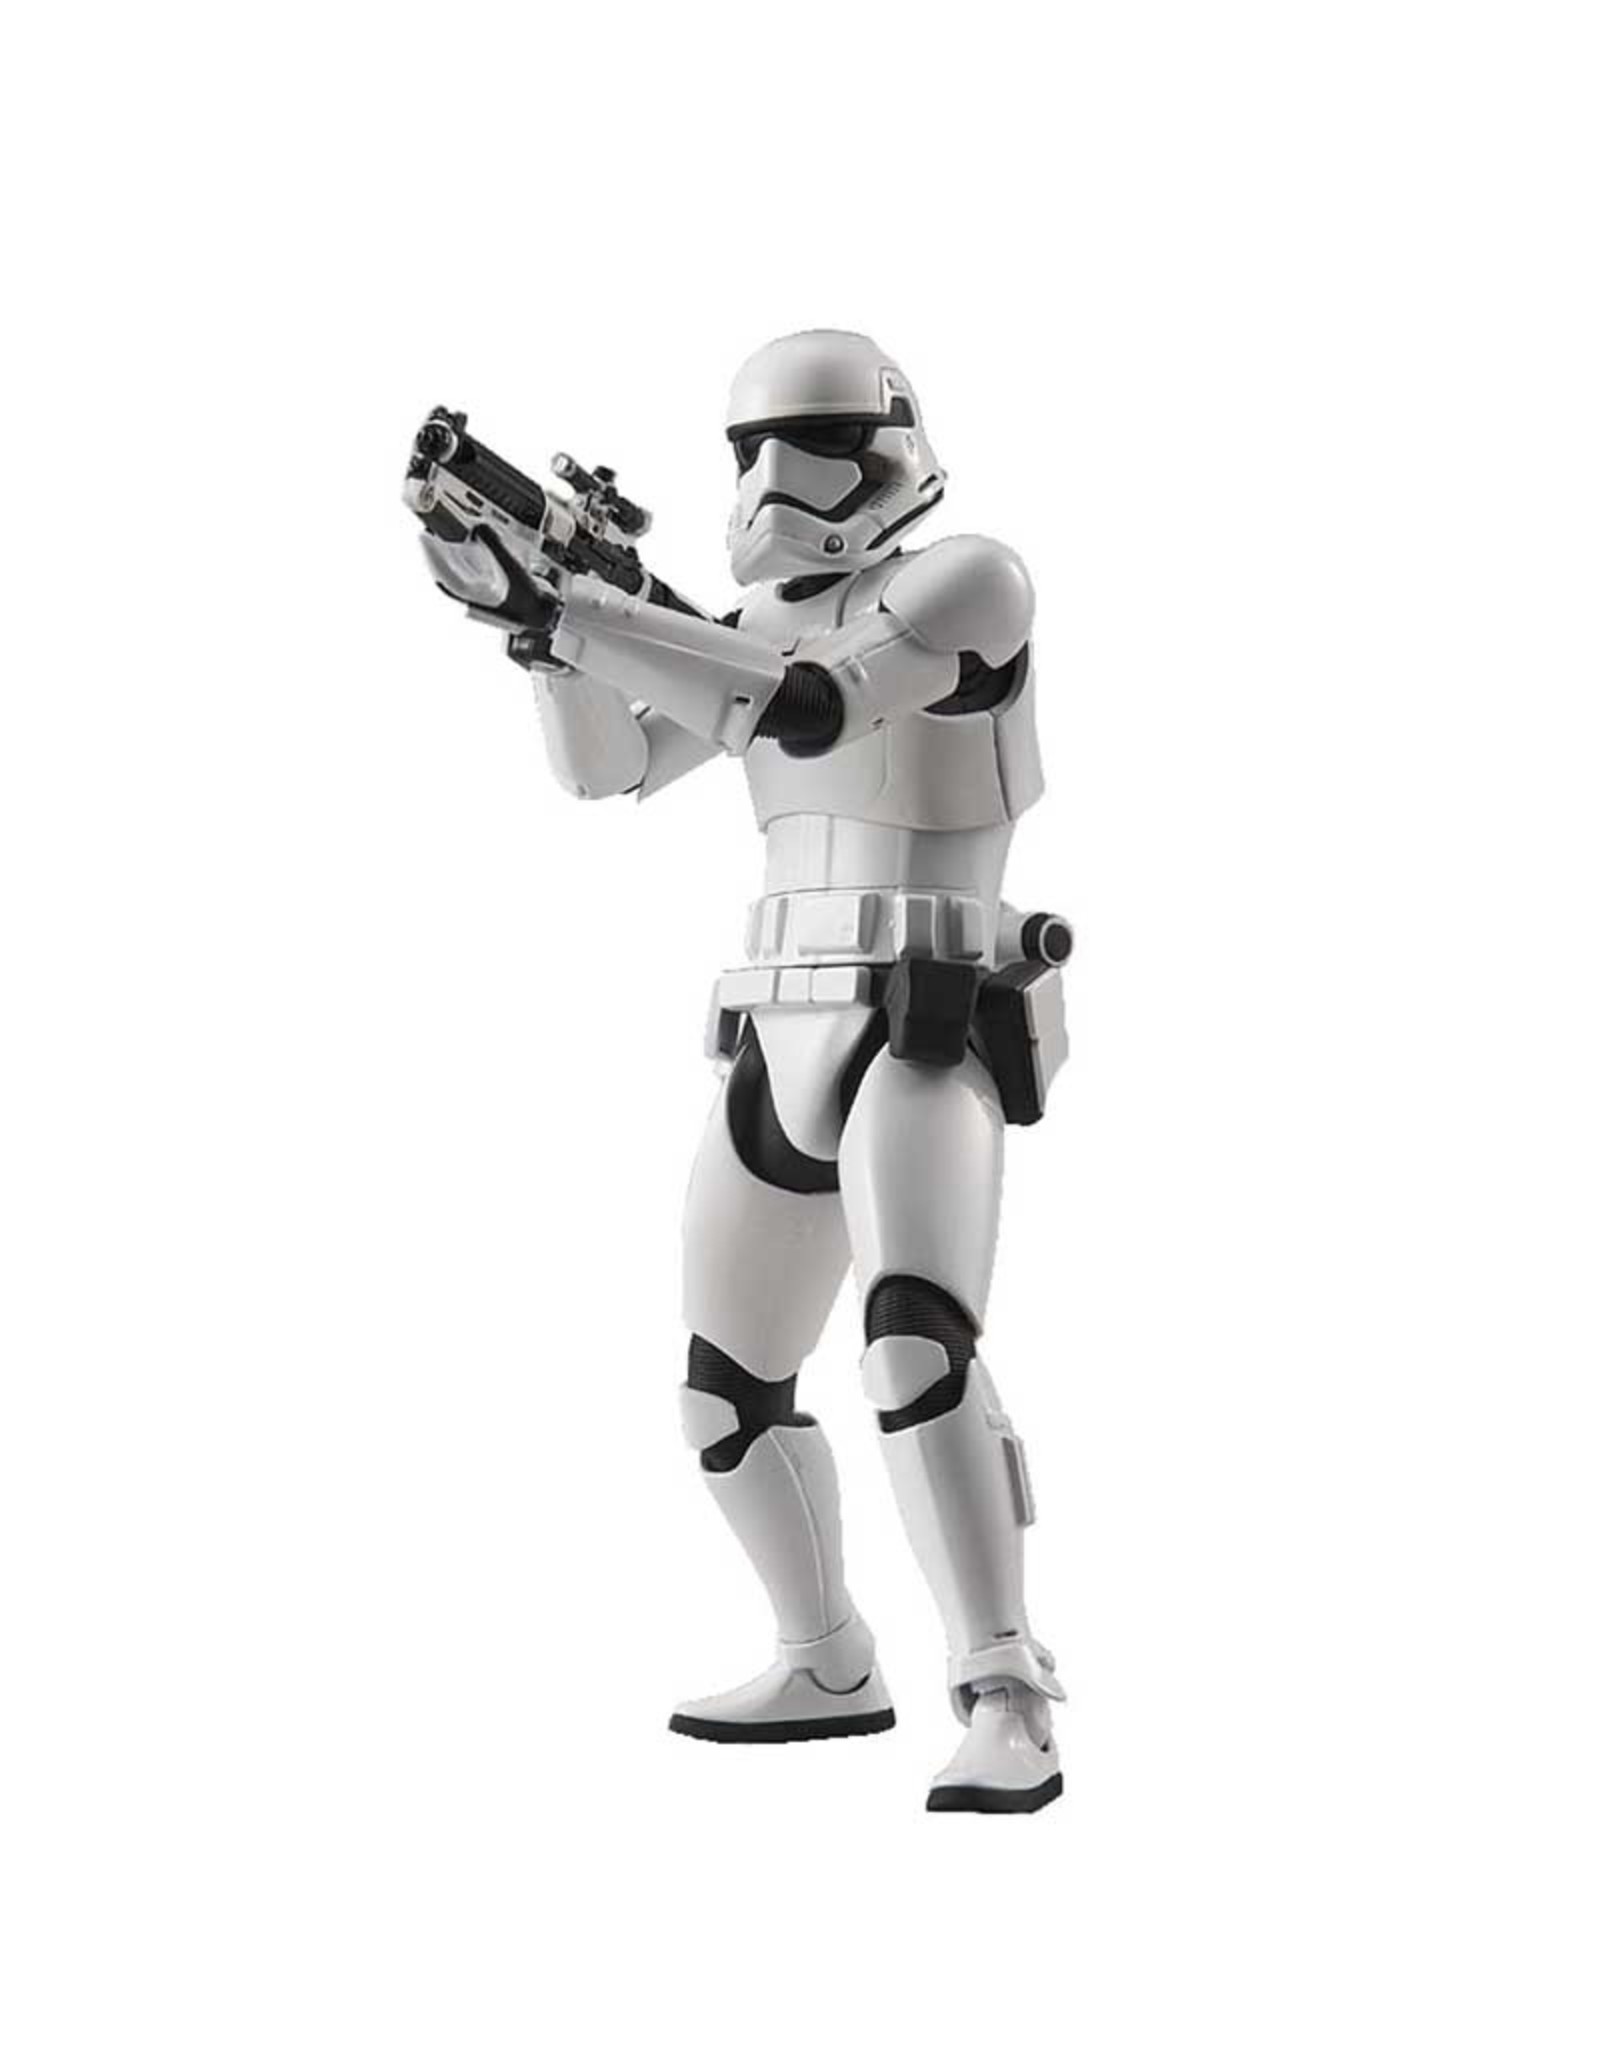 Hobbytyme Star Wars First Order Stormtrooper 1:12 BSW/203217